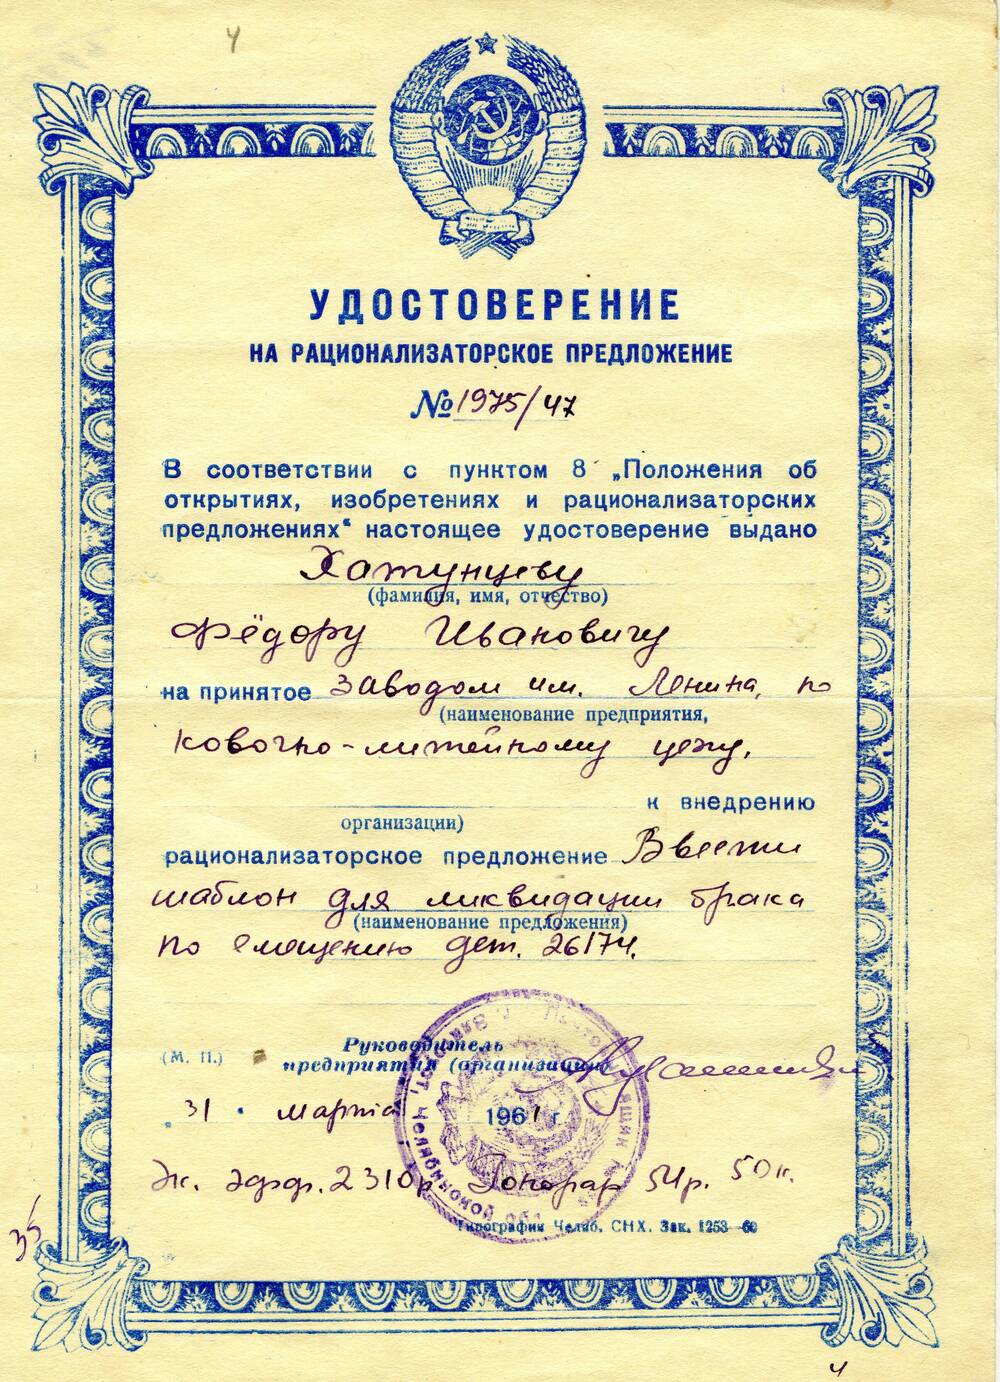 Удостоверение на рационализаторское предложение №1975/47 Хатунцева Федора Ивановича. 1961 г.